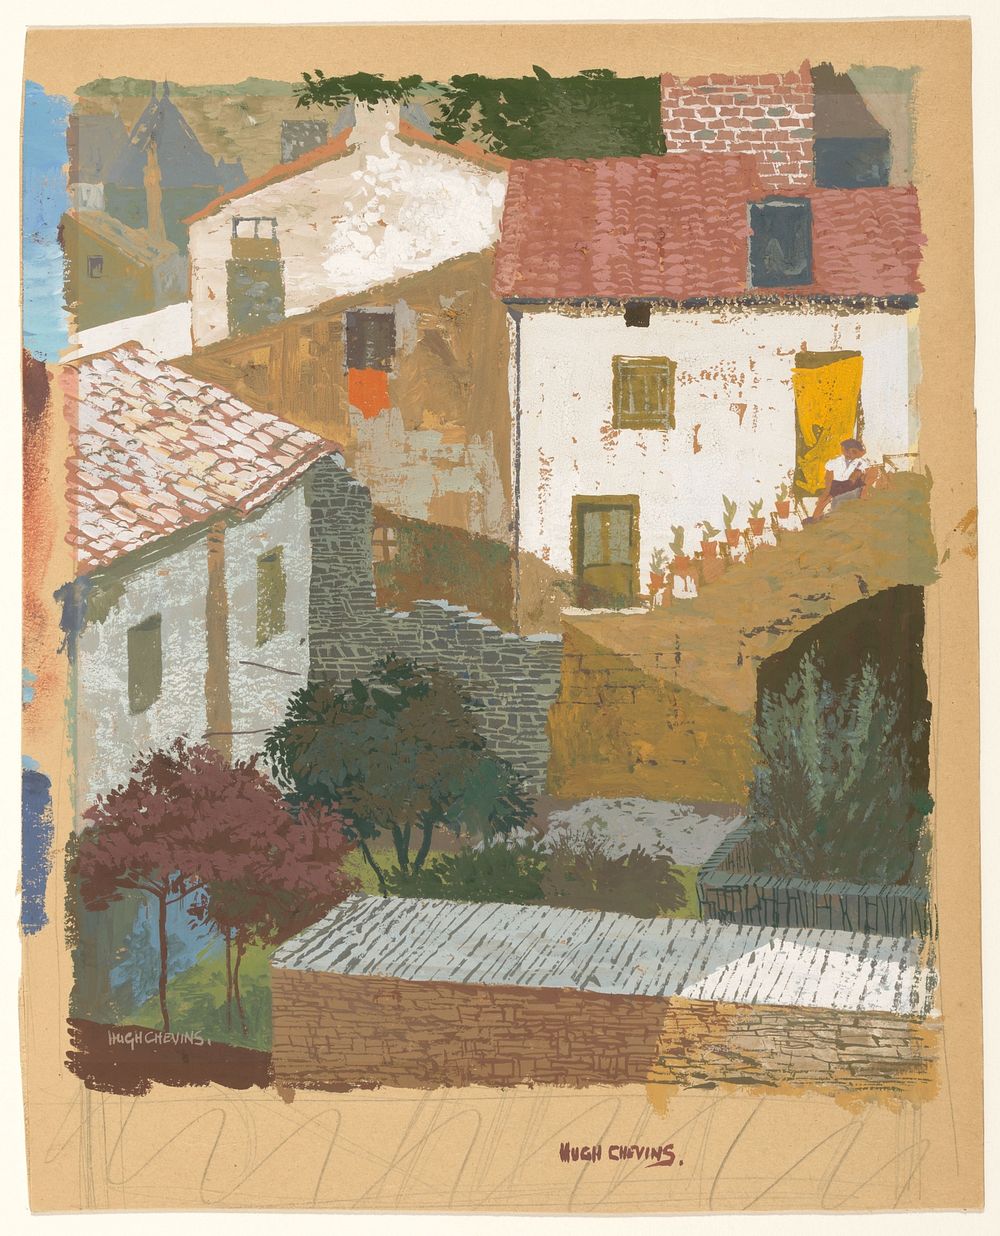 Huizen in een zuidelijk dorp (1908 - 1975) by Hugh Chevins